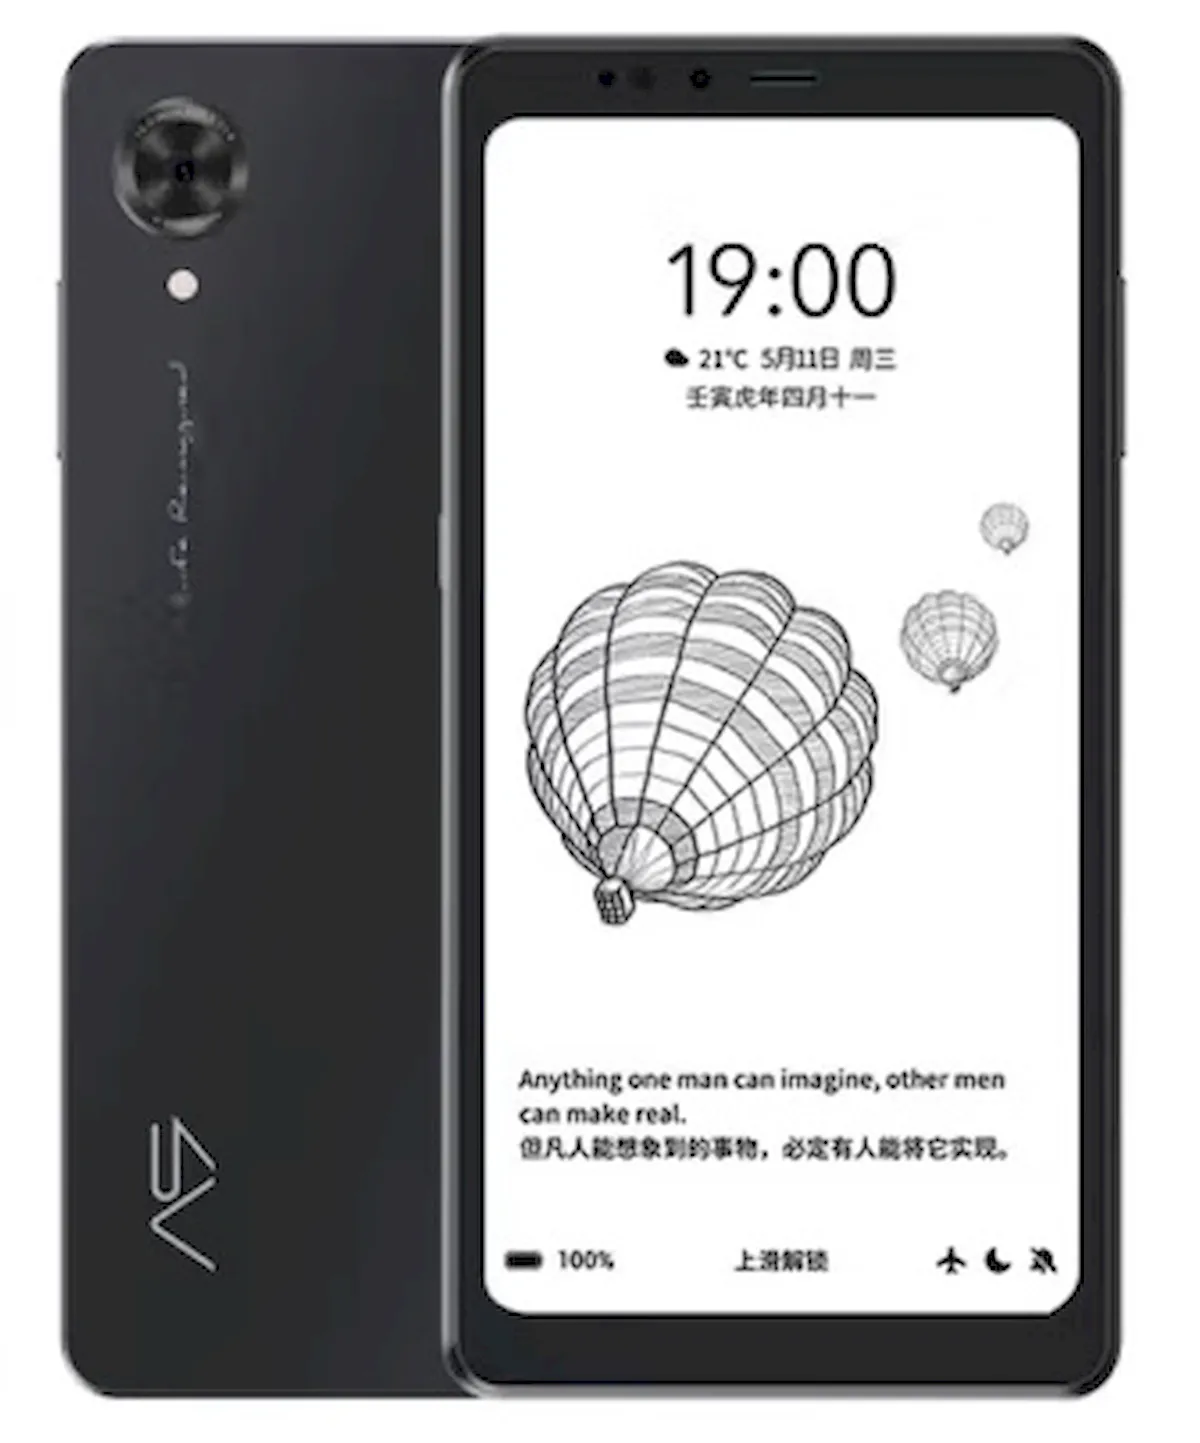 Hisense A9, um smartphone Android com um tela E Ink e Snapdragon 662